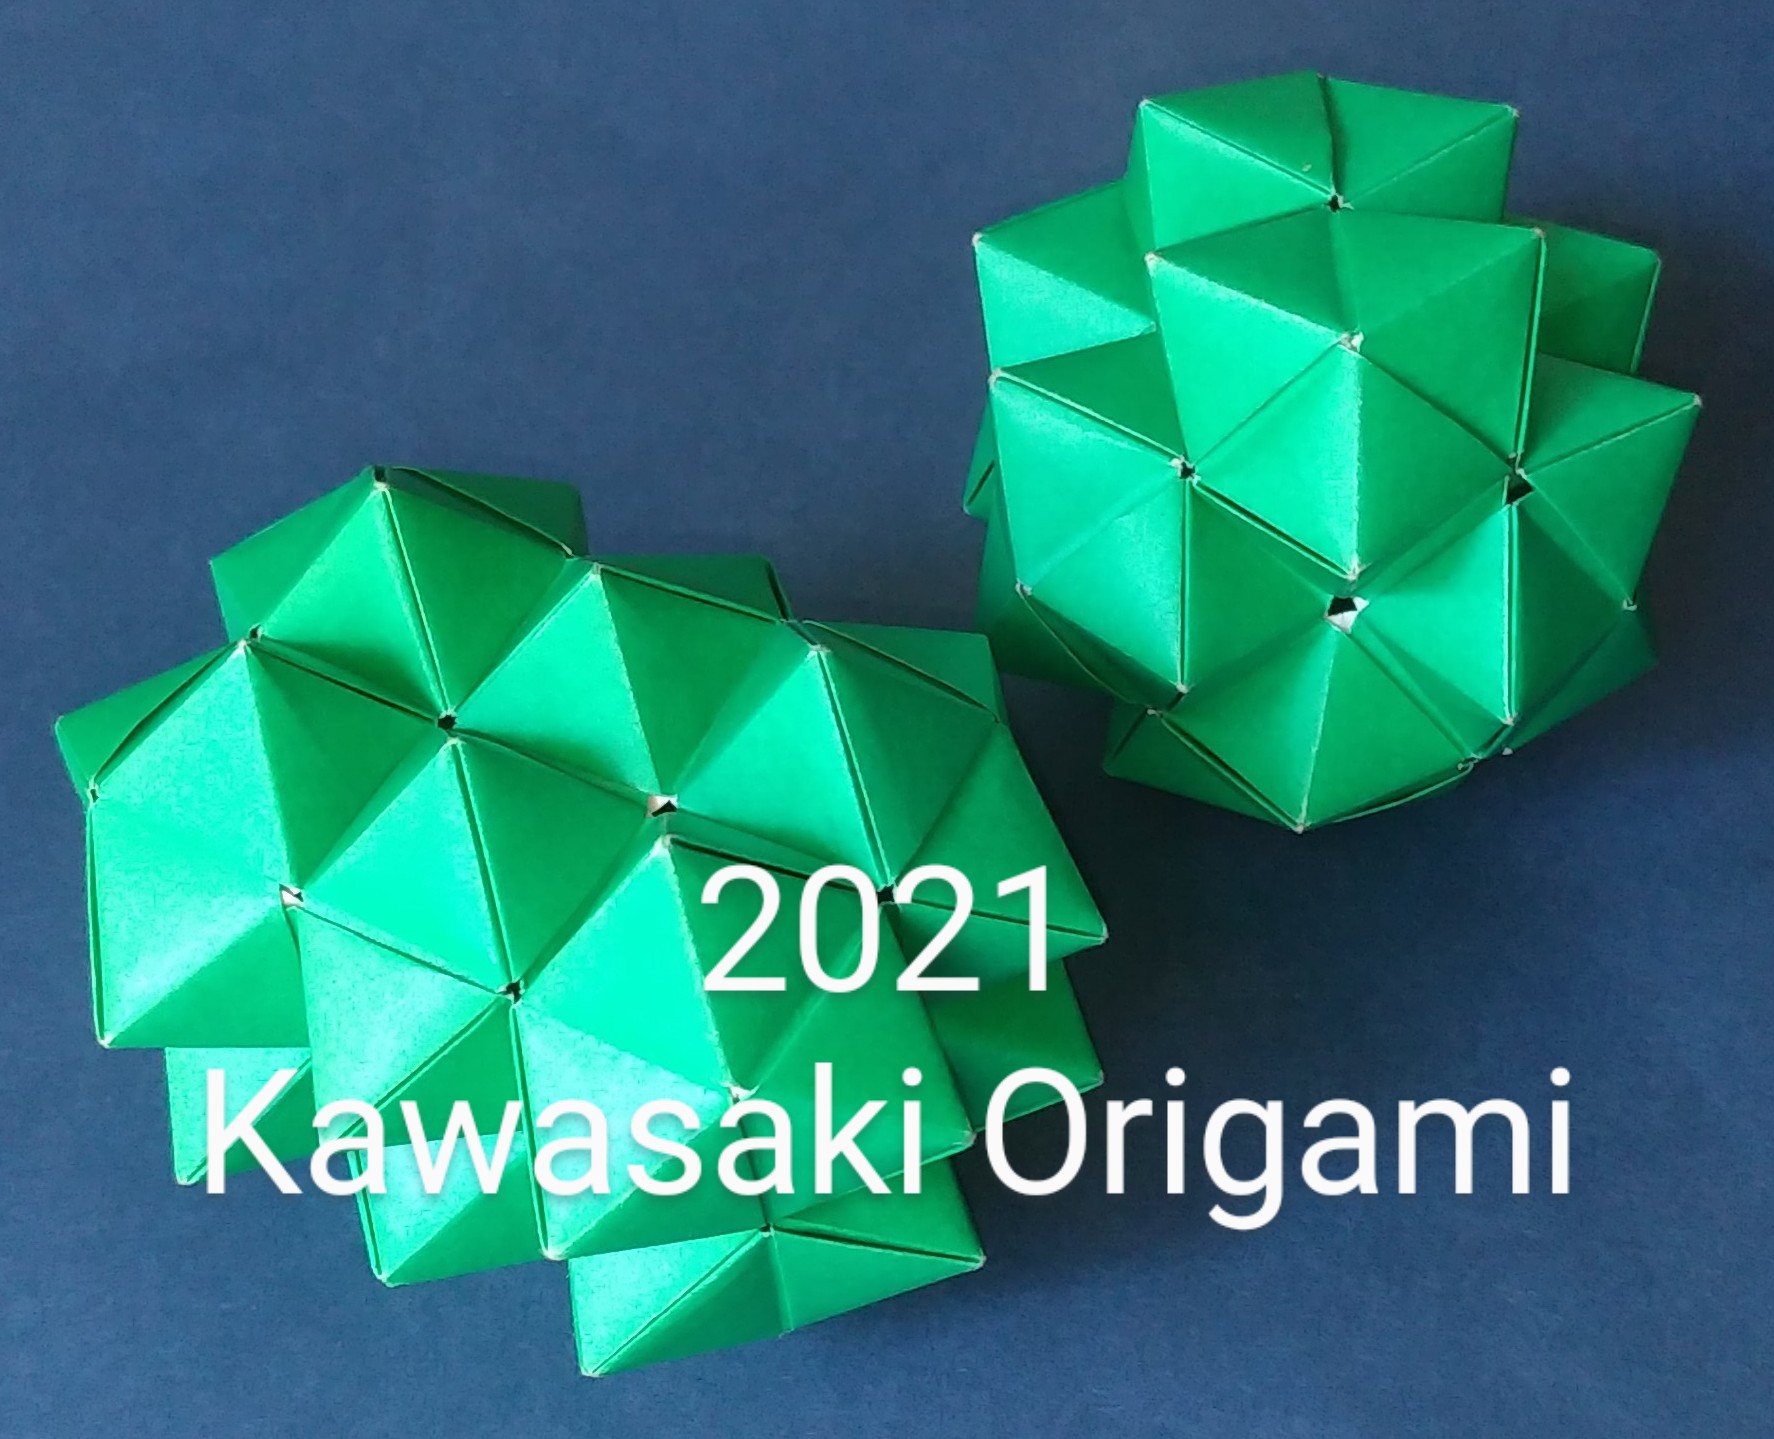 2022/08/07(Sun) 21:50「ドリアン風キューブ」川崎敏和
（創作者 Author：川崎敏和,　製作者 Folder：川崎敏和,　出典 Source：2021年川崎折り紙キット）
 長方形（6.5cm×7.5cm）で気持ち良く折れるピラミッド型パーツを組んで作ります。最小は2枚組みで、画像は24組みと40枚組みです。